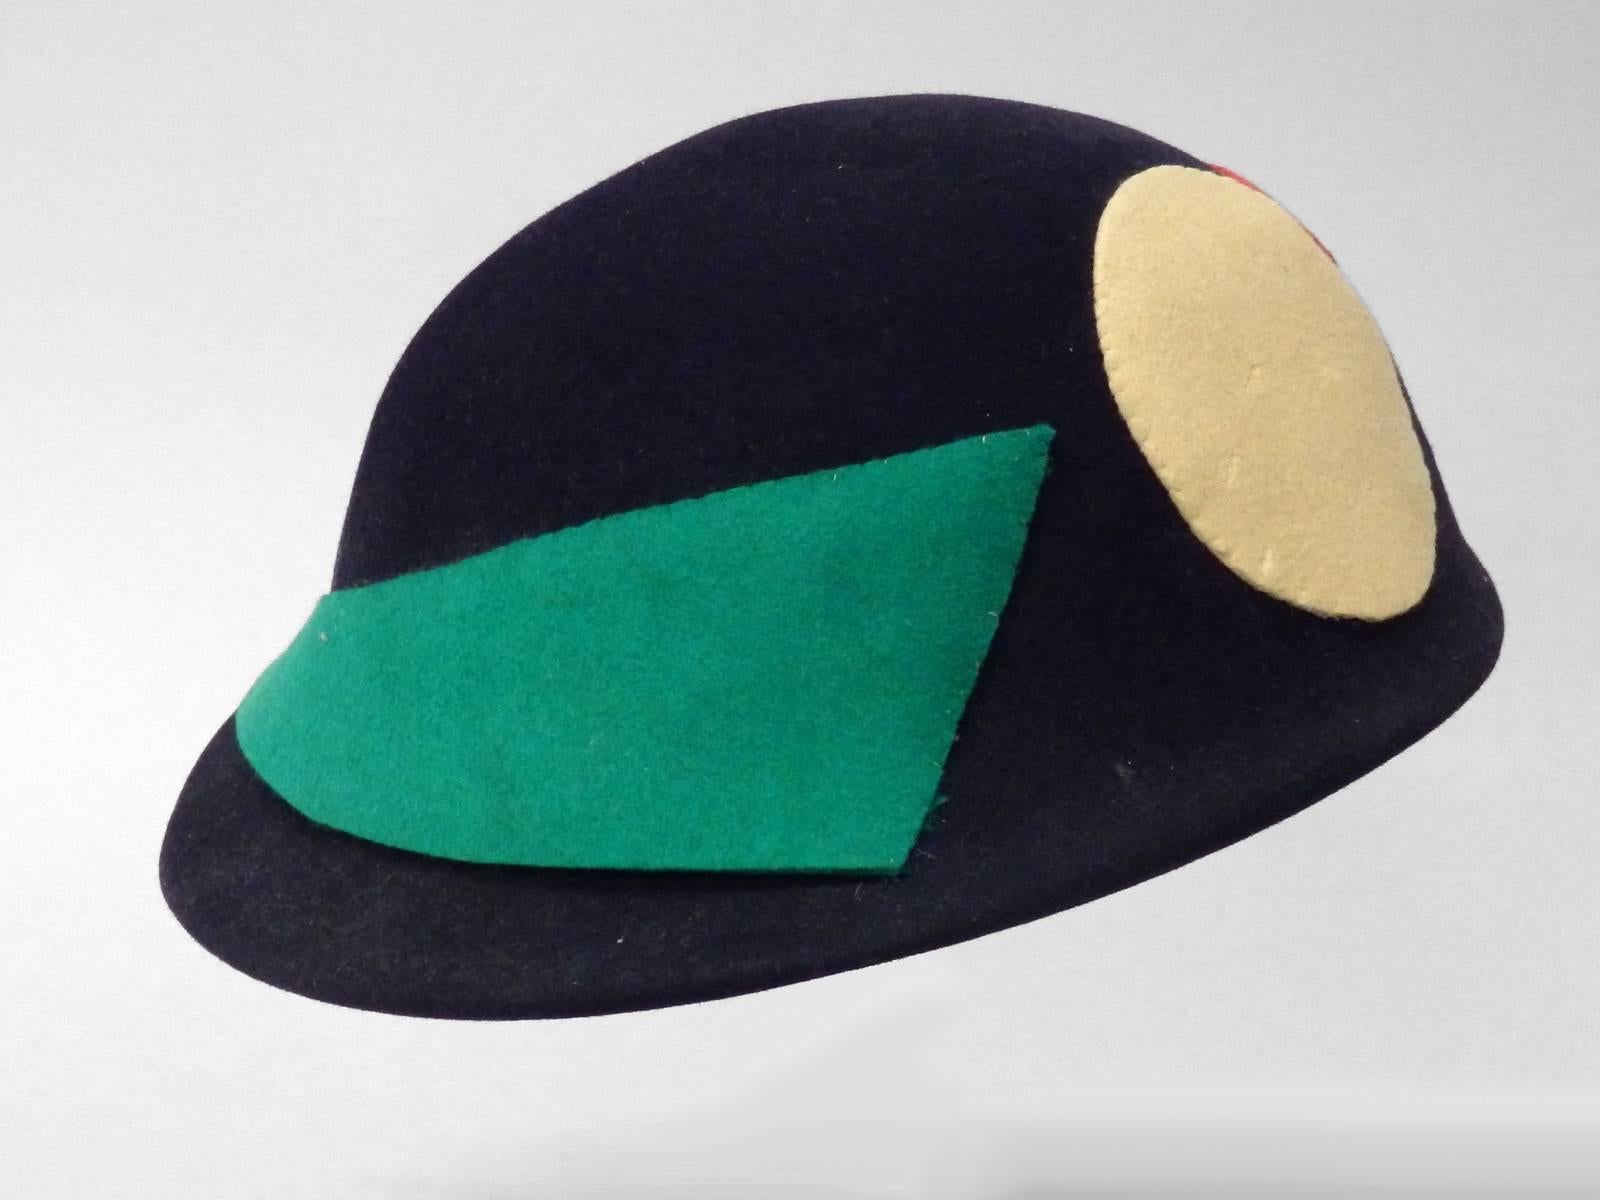 American Art Deco Era Flapper Style Cloche Hat For Sale